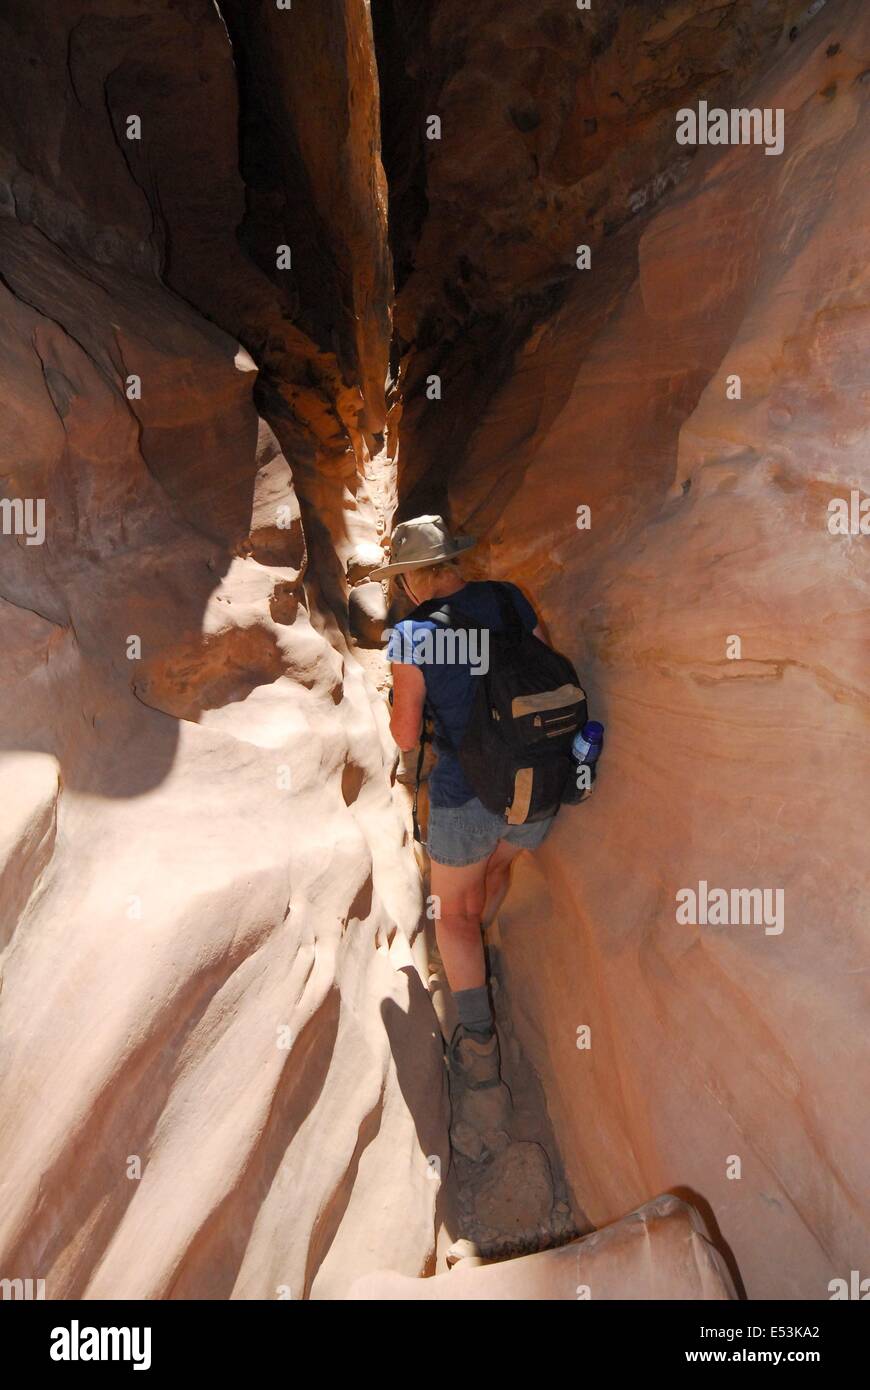 Senior citizen climbing through slot canyon. Stock Photo